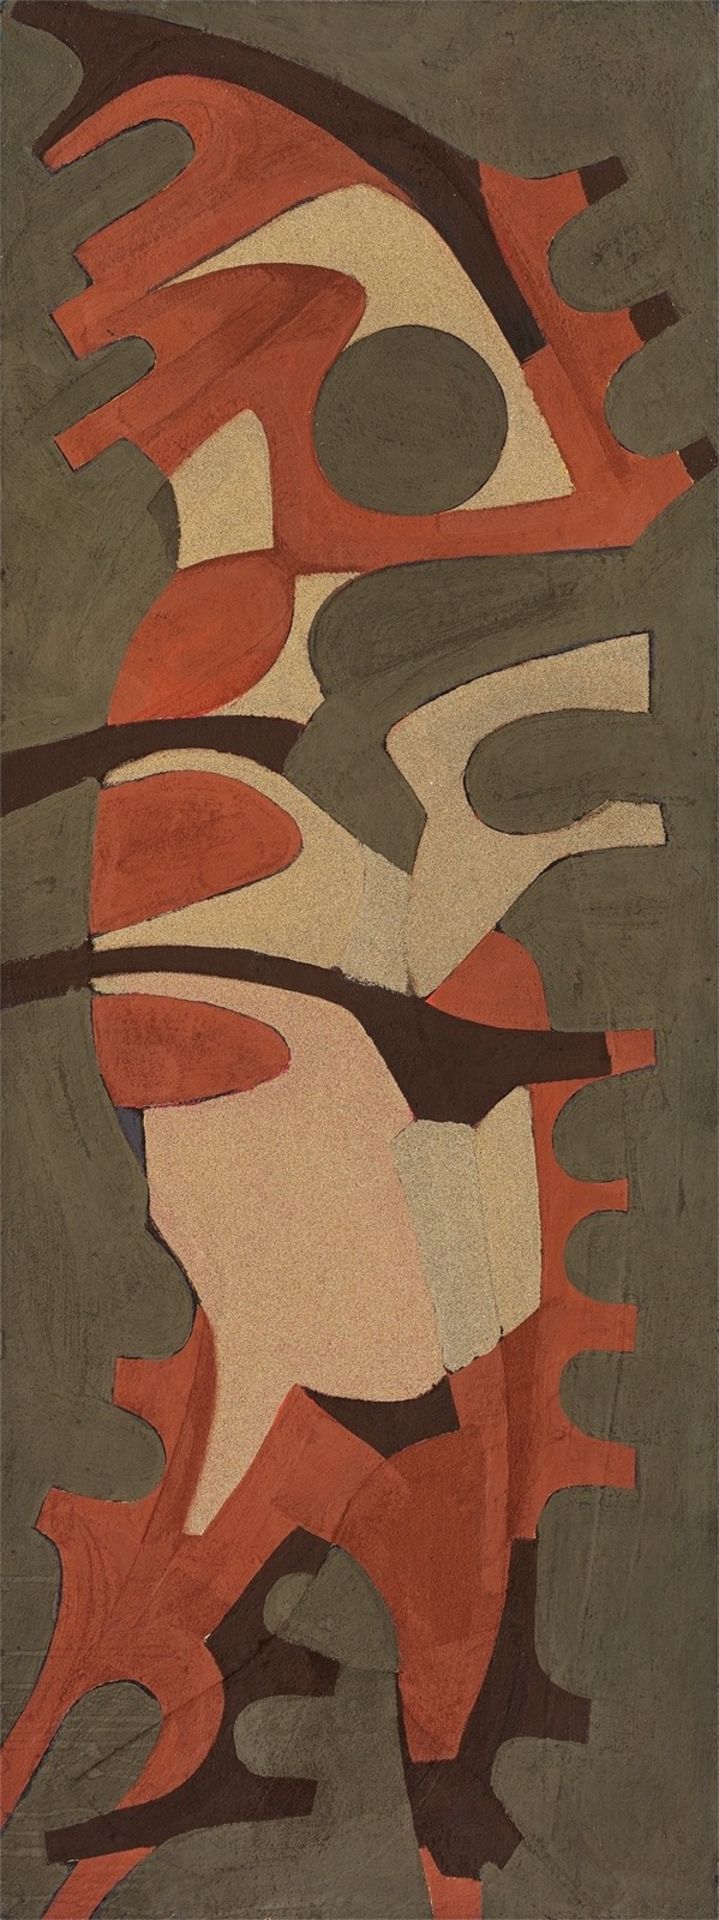 Veit von Seckendorff. ”Krieger II”. 1961 - Image 2 of 3